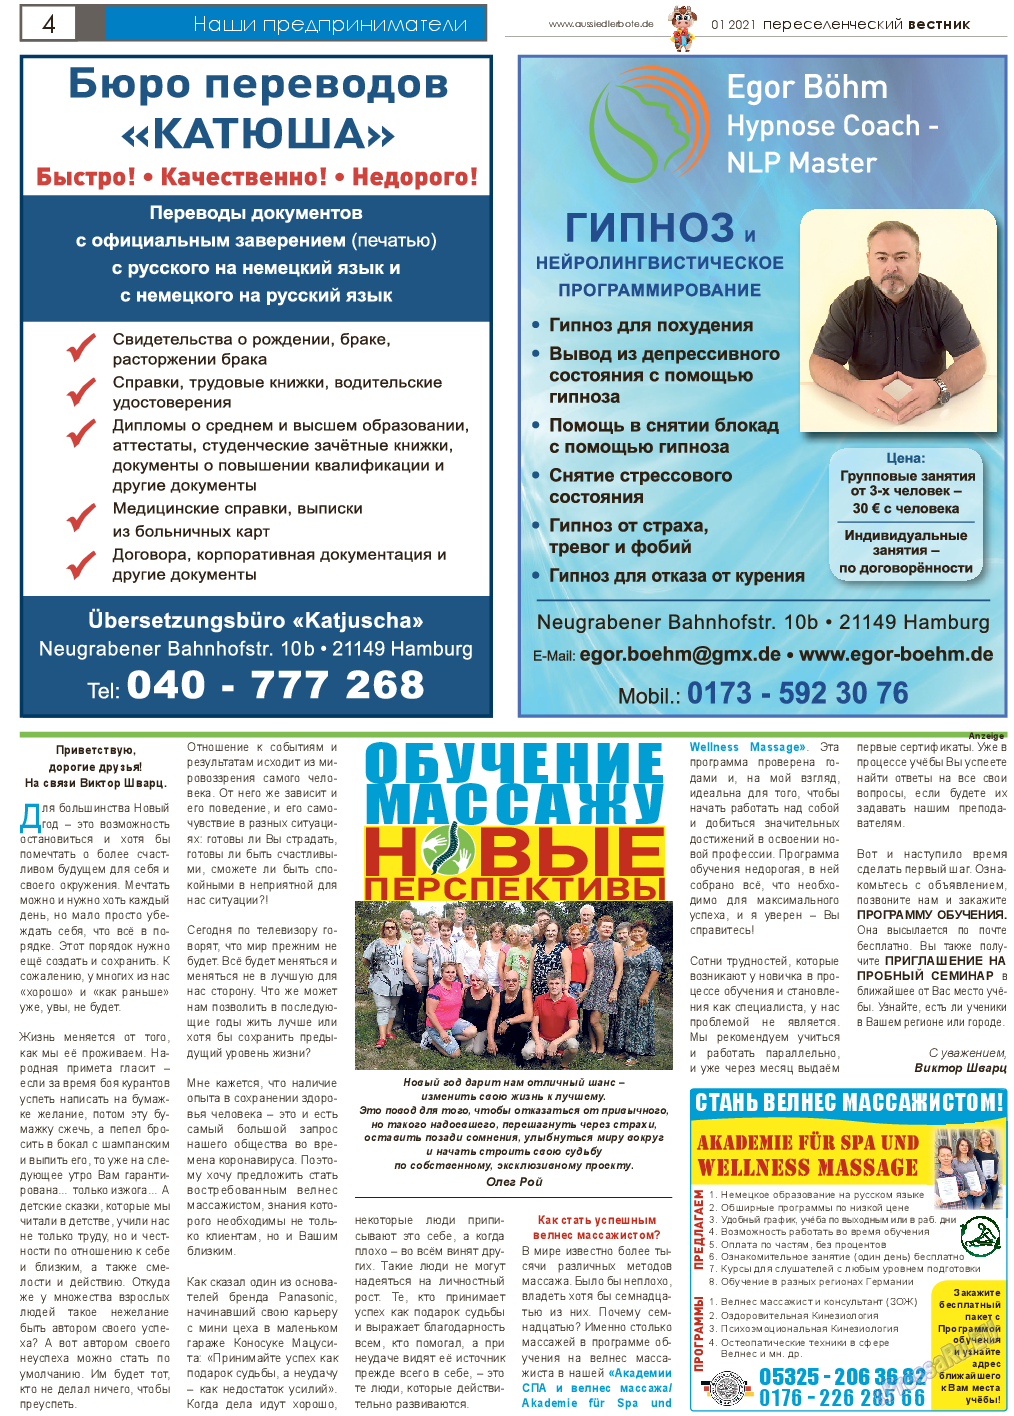 Переселенческий вестник, газета. 2021 №1 стр.4